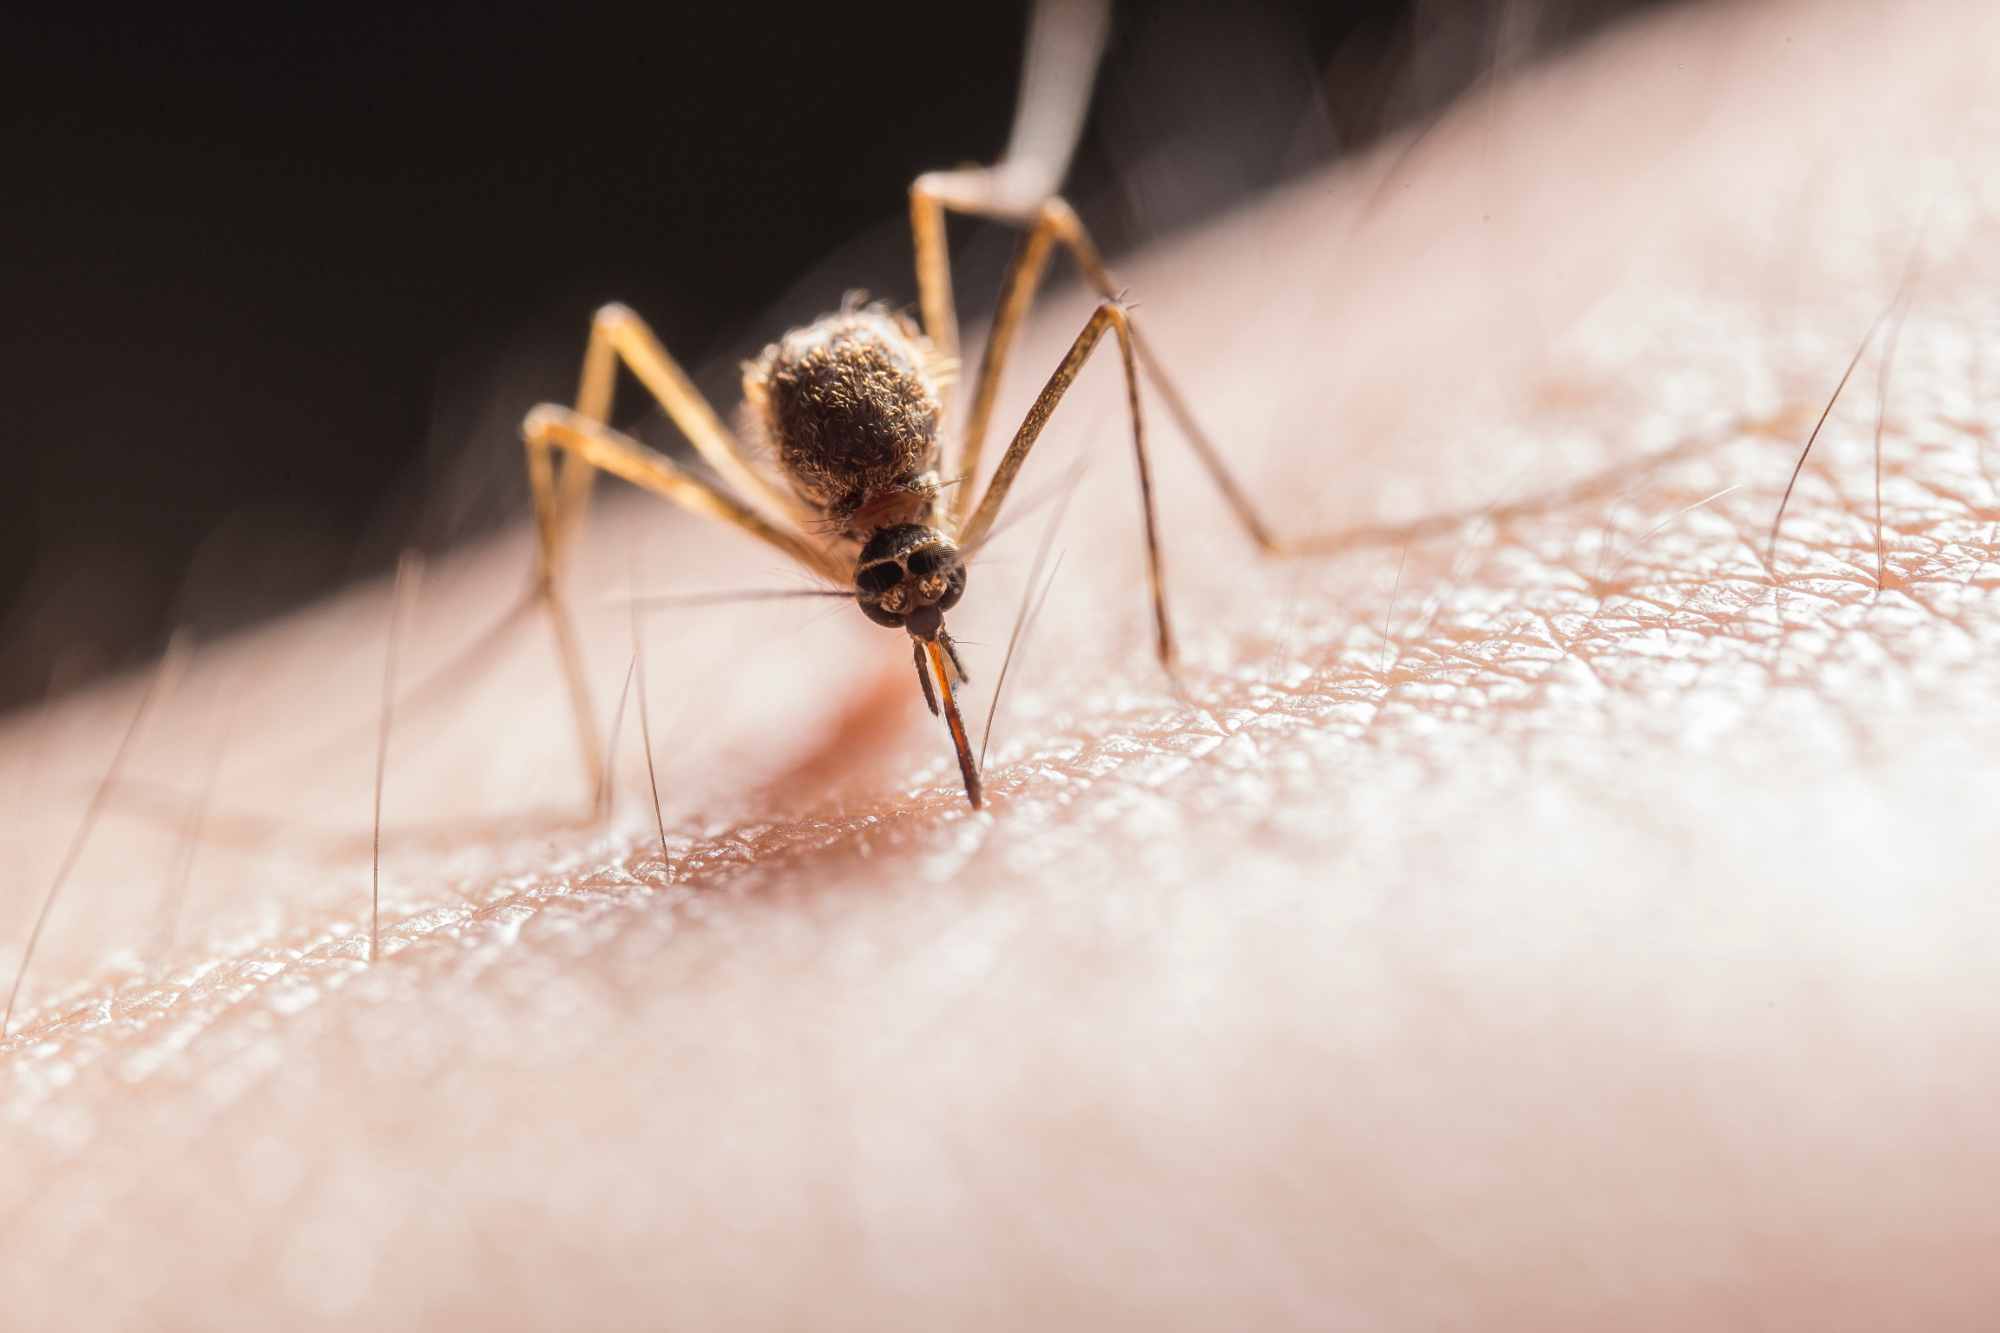 Comment reconnaitre et traiter une piqûre d'insecte ? | Le Guide Santé